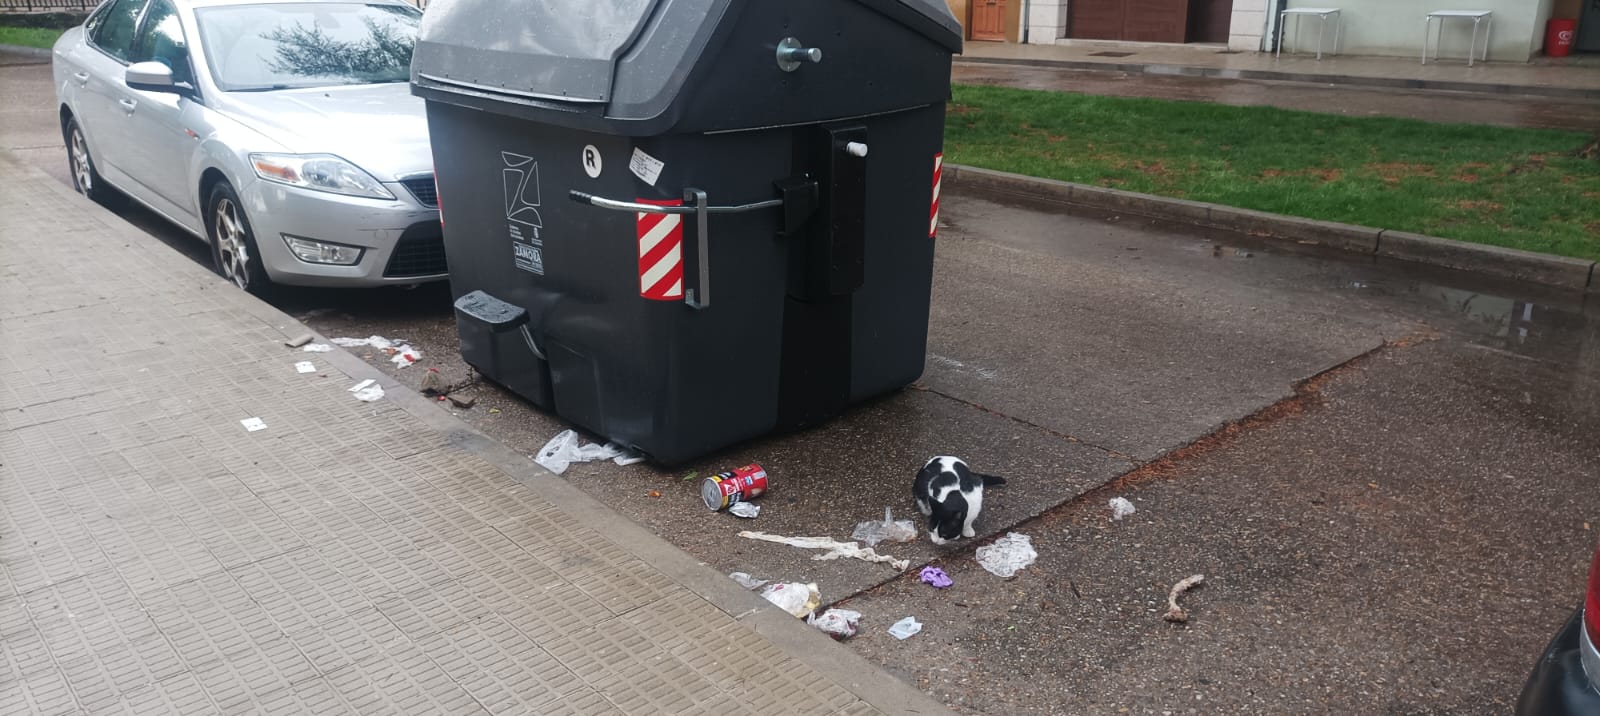 Contenedor tras la recogida de basura con un gato en las inmediaciones